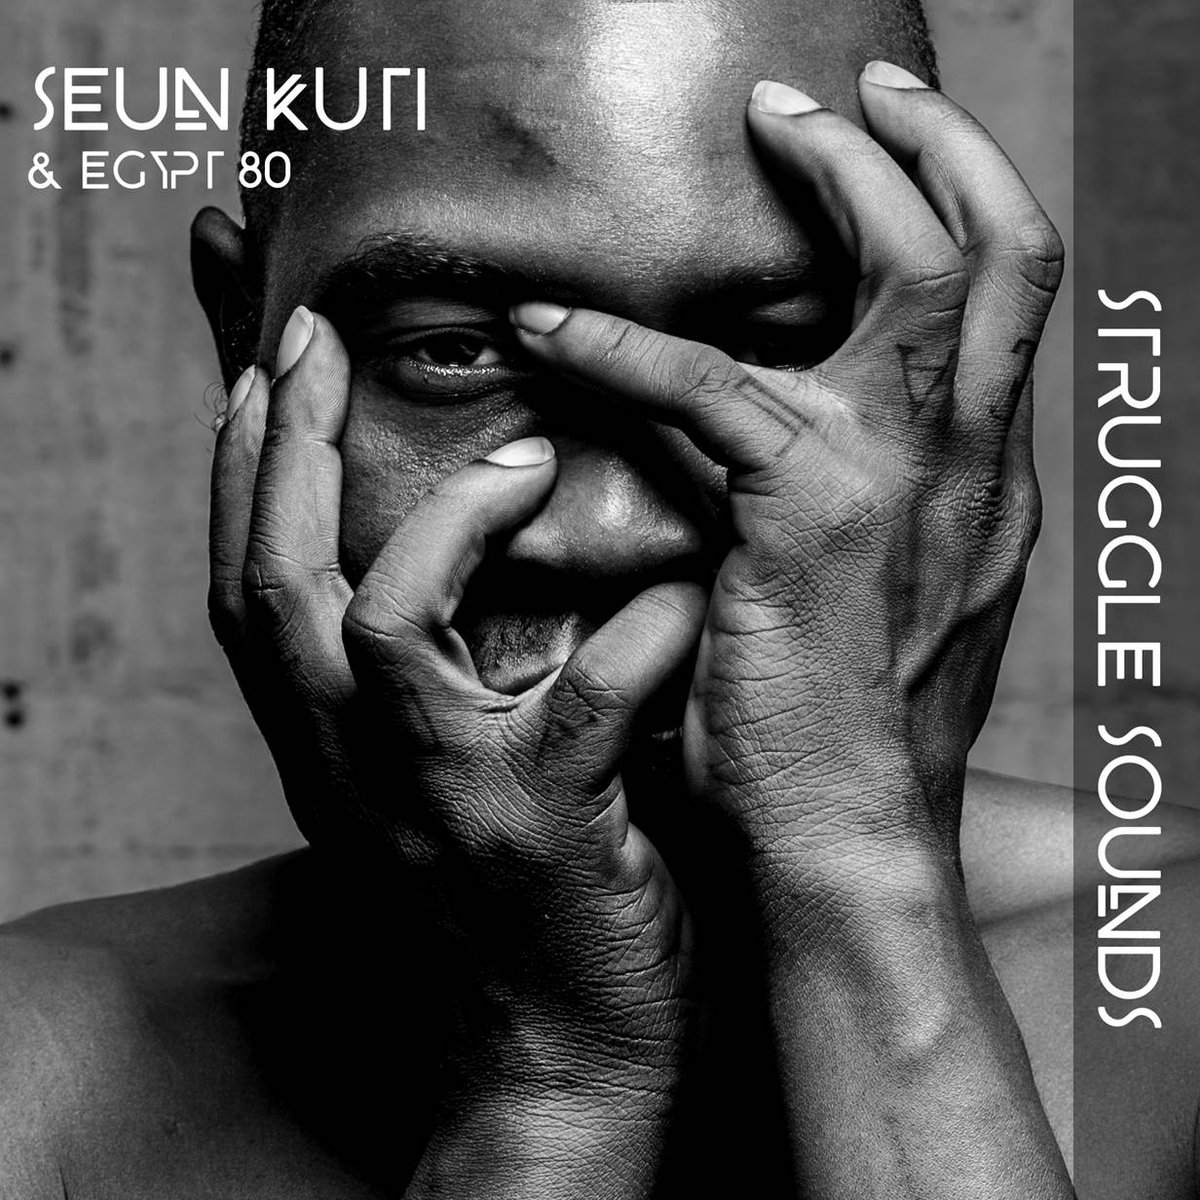 Seun Kuti & Egypt 80, le combat continue avec Struggle Sounds